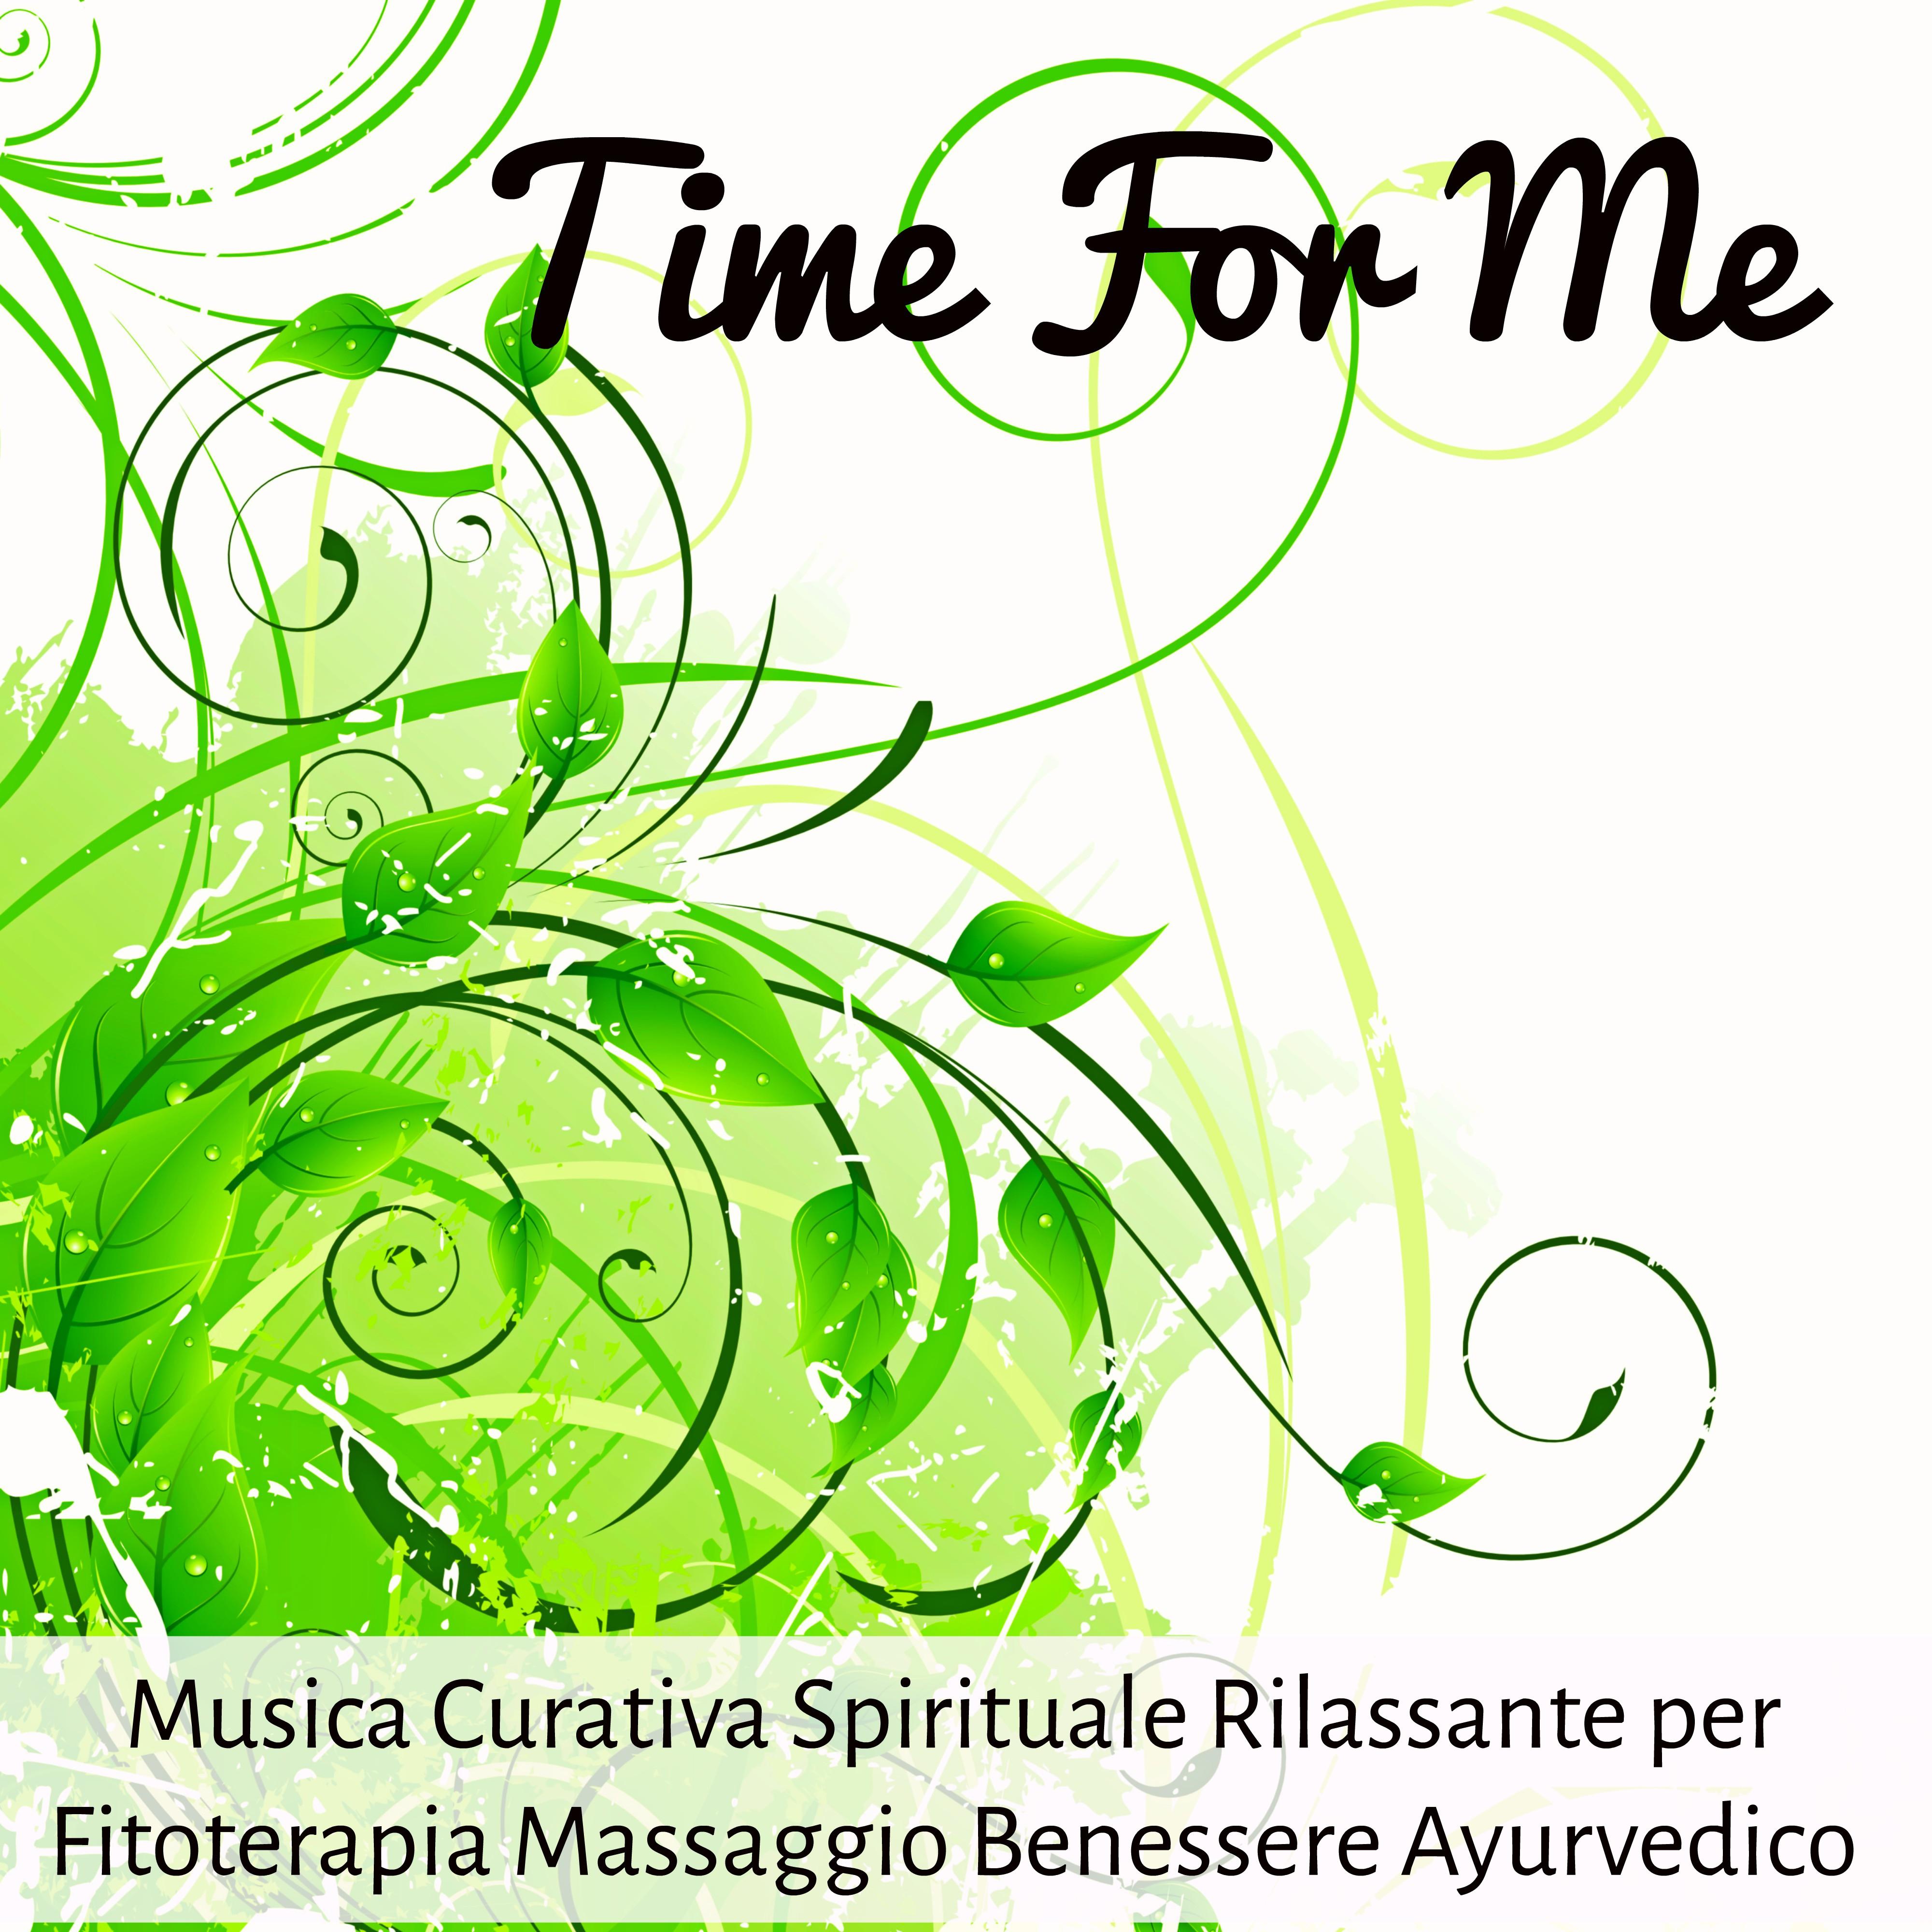 Time For Me - Musica Curativa Spirituale Rilassante per Fitoterapia Massaggio Benessere Ayurvedico